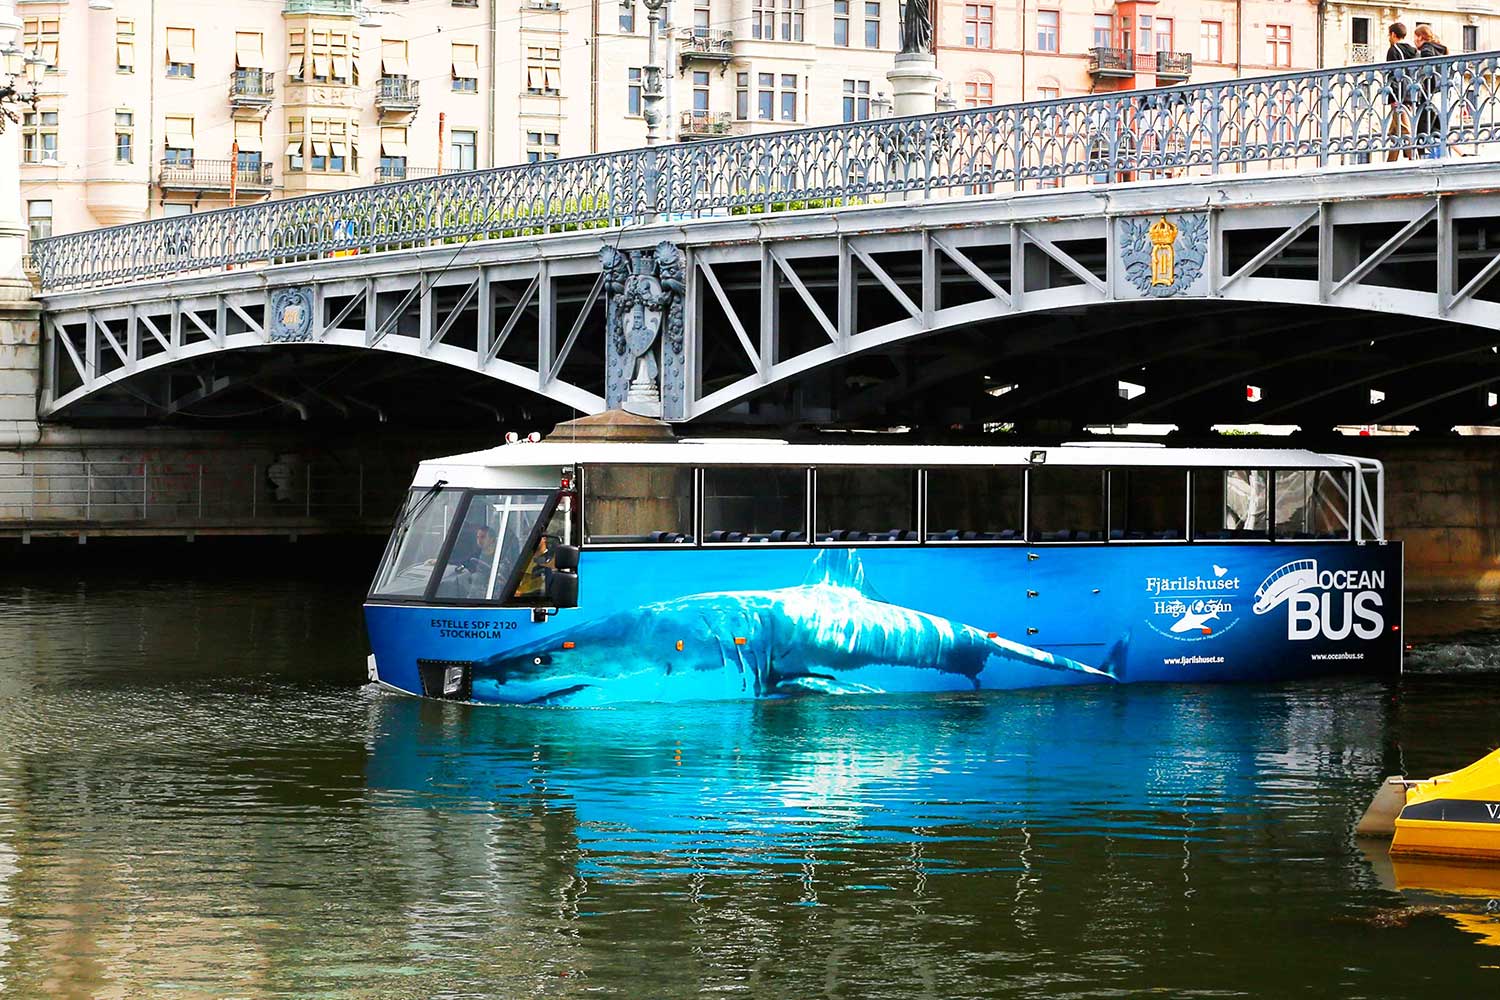 L’Ocean Bus: una prospettiva diversa di Stoccolma